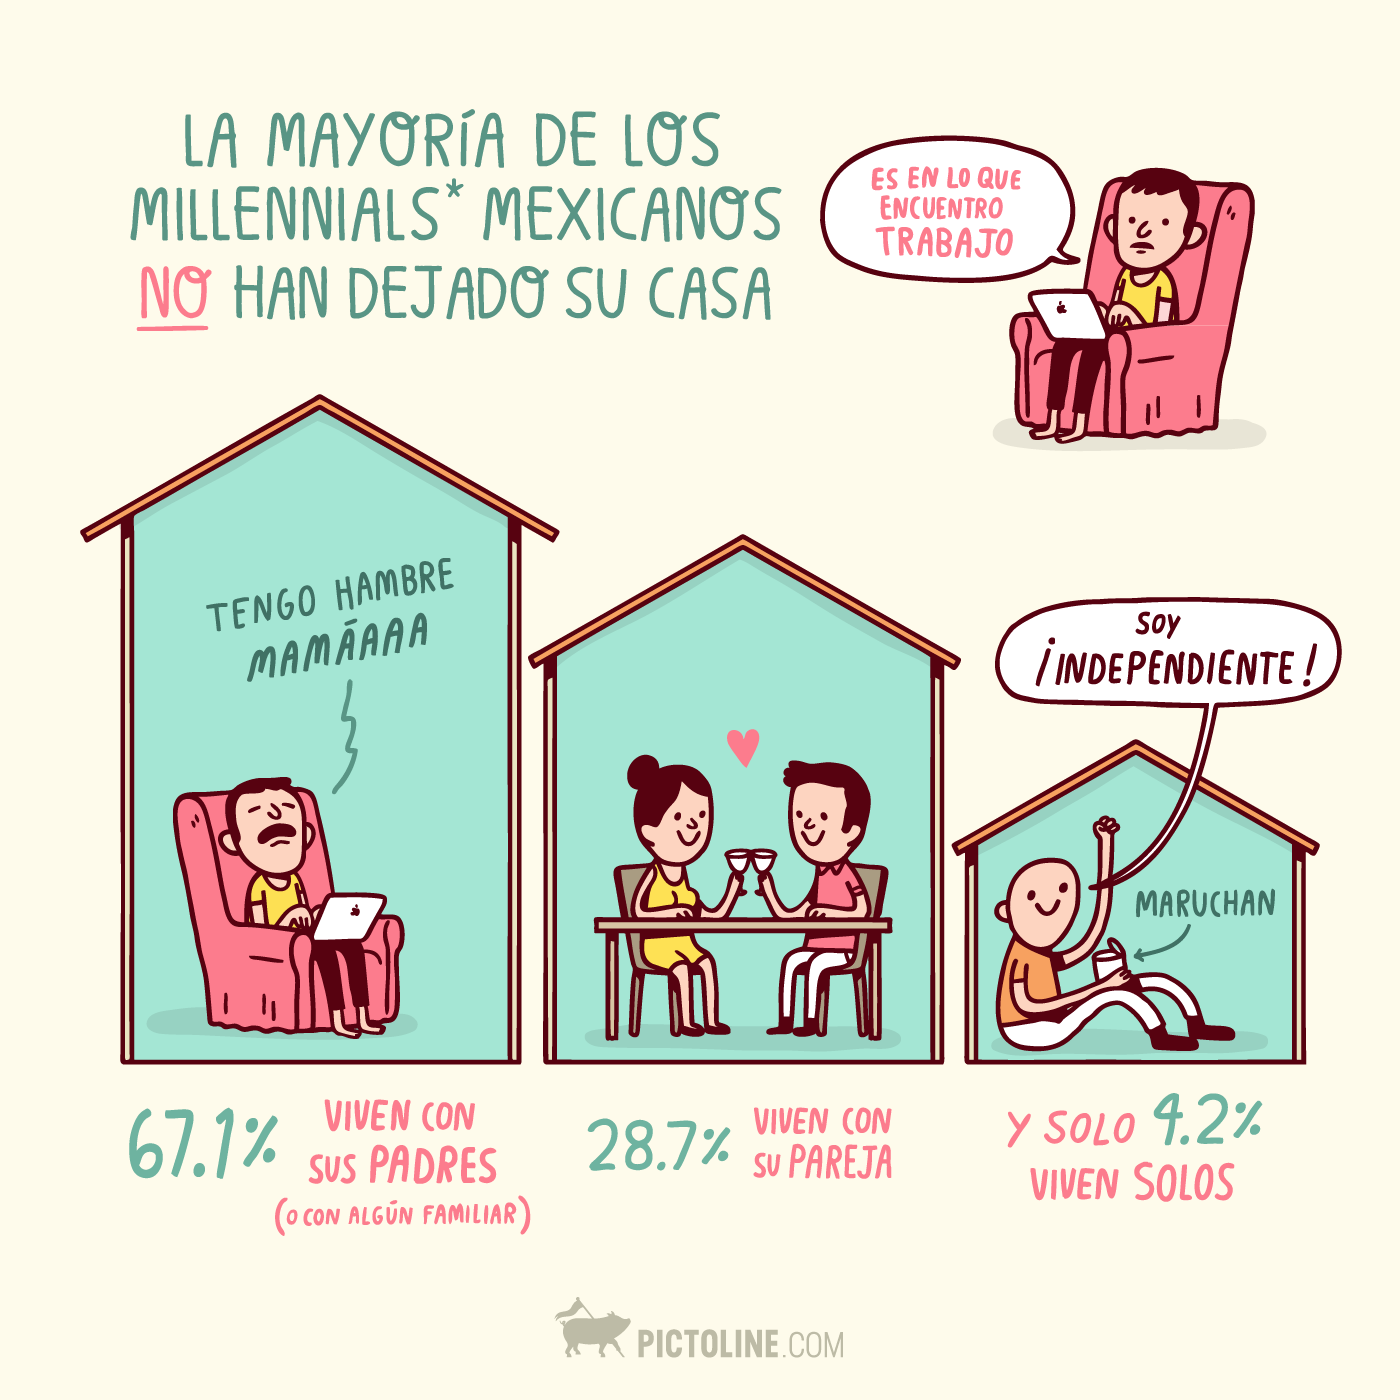 La mayoría de los millennials mexicanos no han dejado su casa